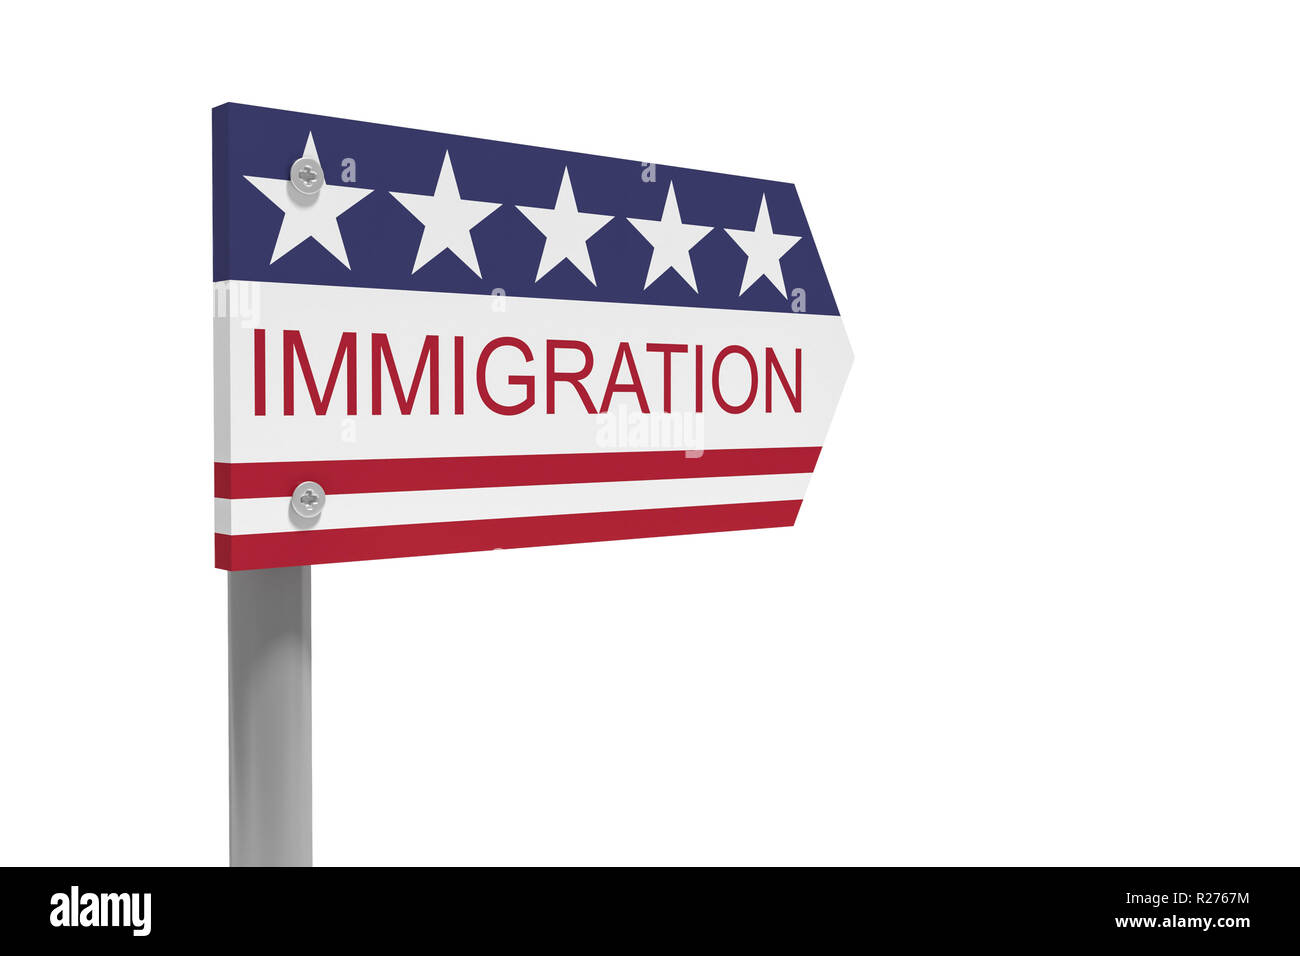 USA Politik Konzept: Einwanderung Richtung Zeichen mit US-Flagge, 3-D-Abbildung auf weißem Hintergrund Stockfoto